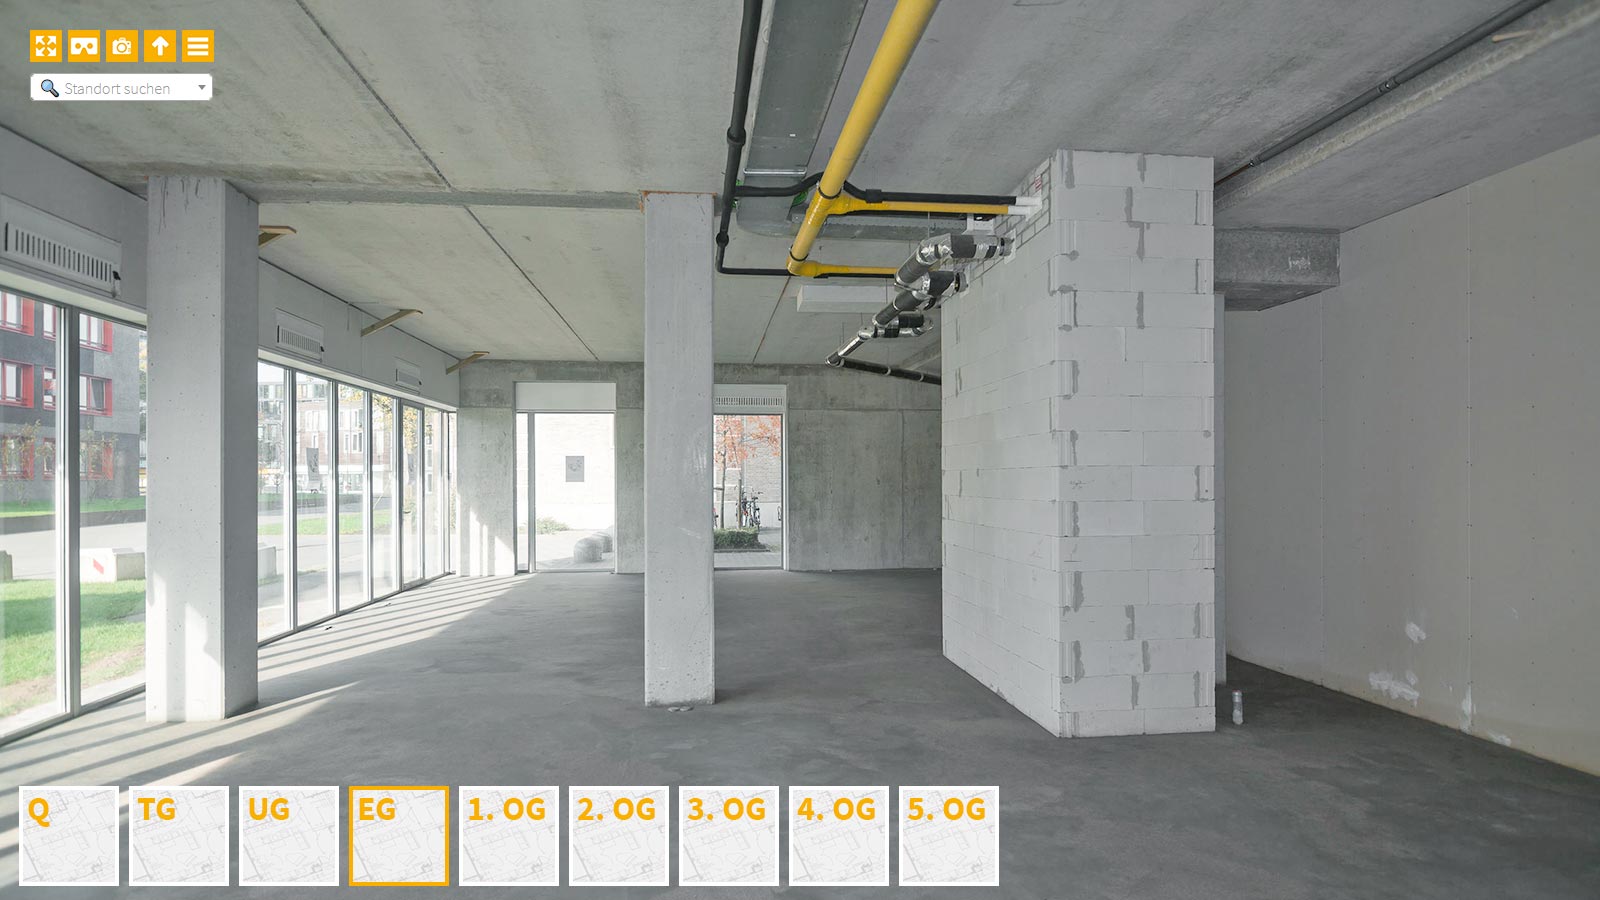 Baudokumentation 360 Grad bei gestörten Projekten in 


	


	


	


	


	


	


	


	


	


	Neuss









, Bilddokumentation als virtueller Rundgang